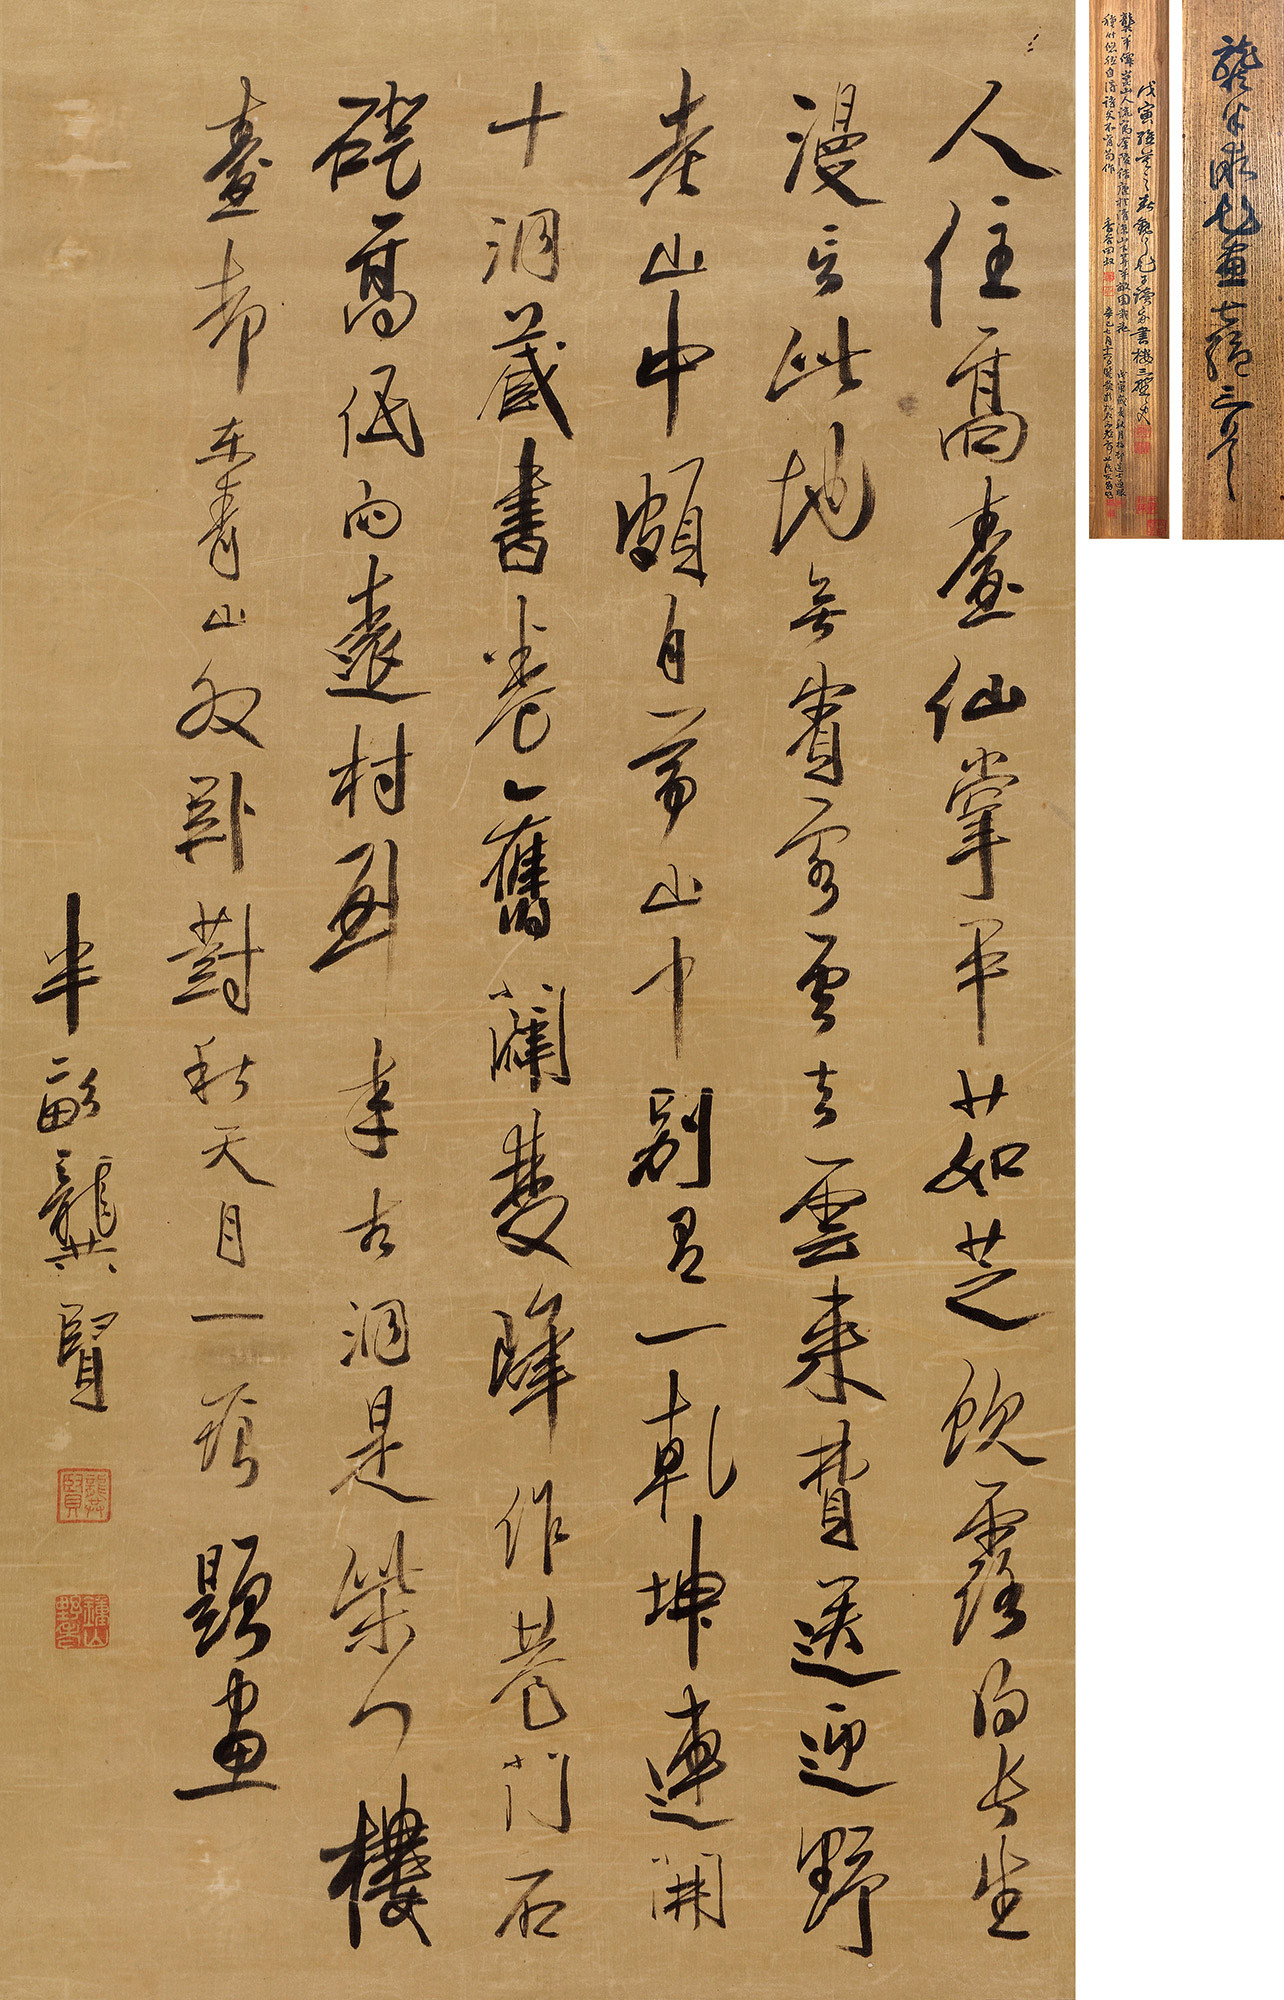 calligraphy in running script